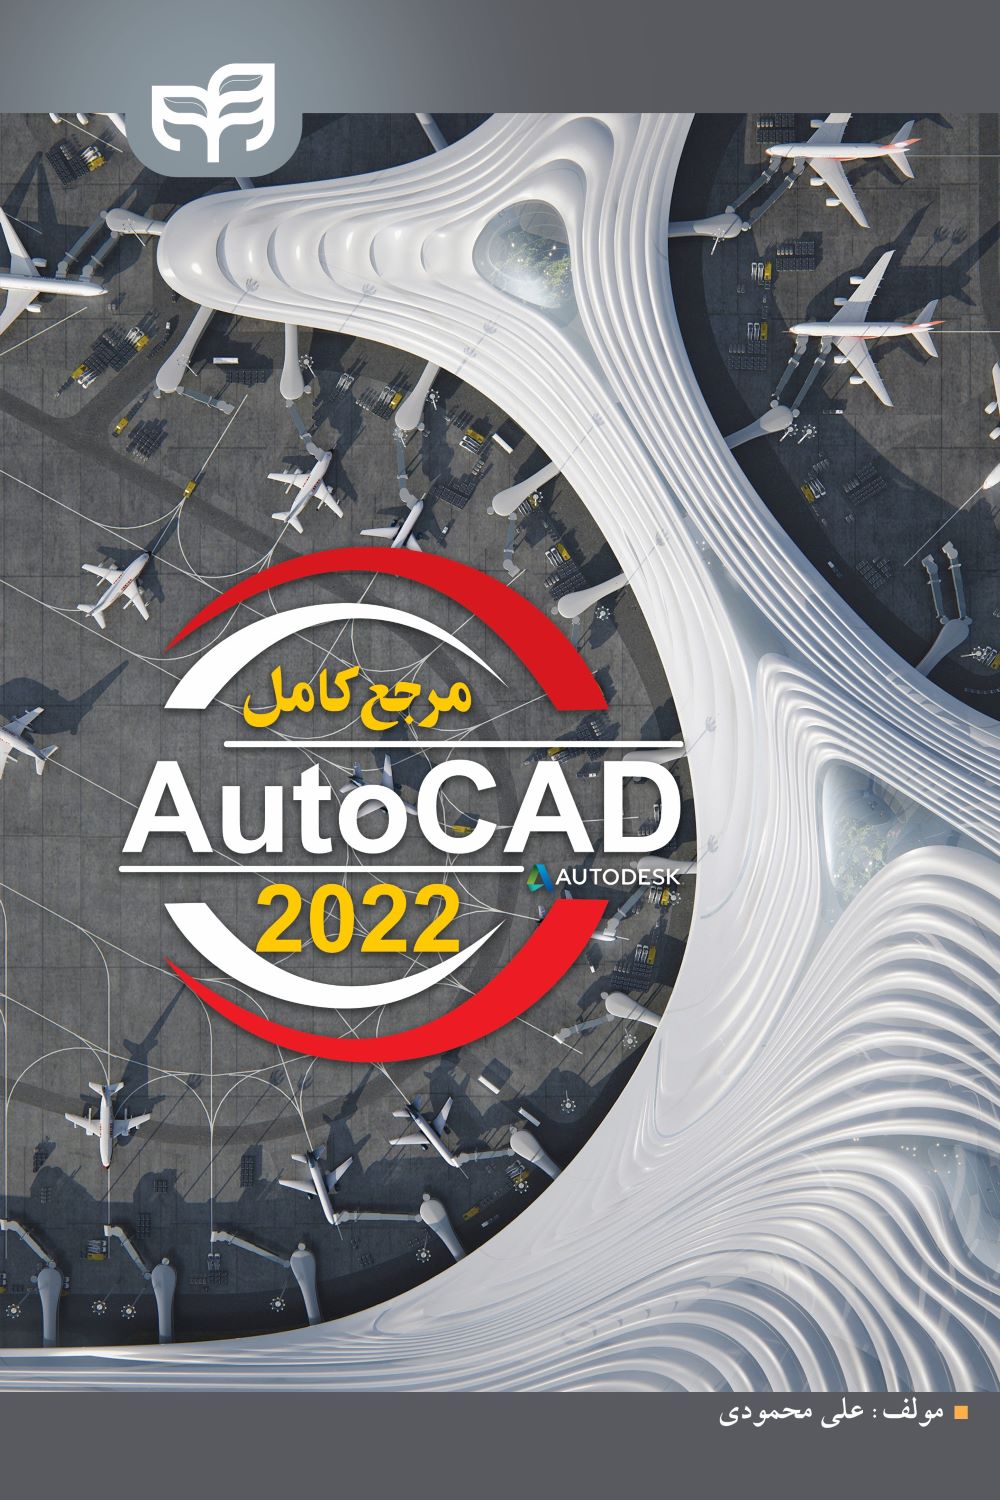  خريد کتاب  مرجع کامل AutoCAD 2022